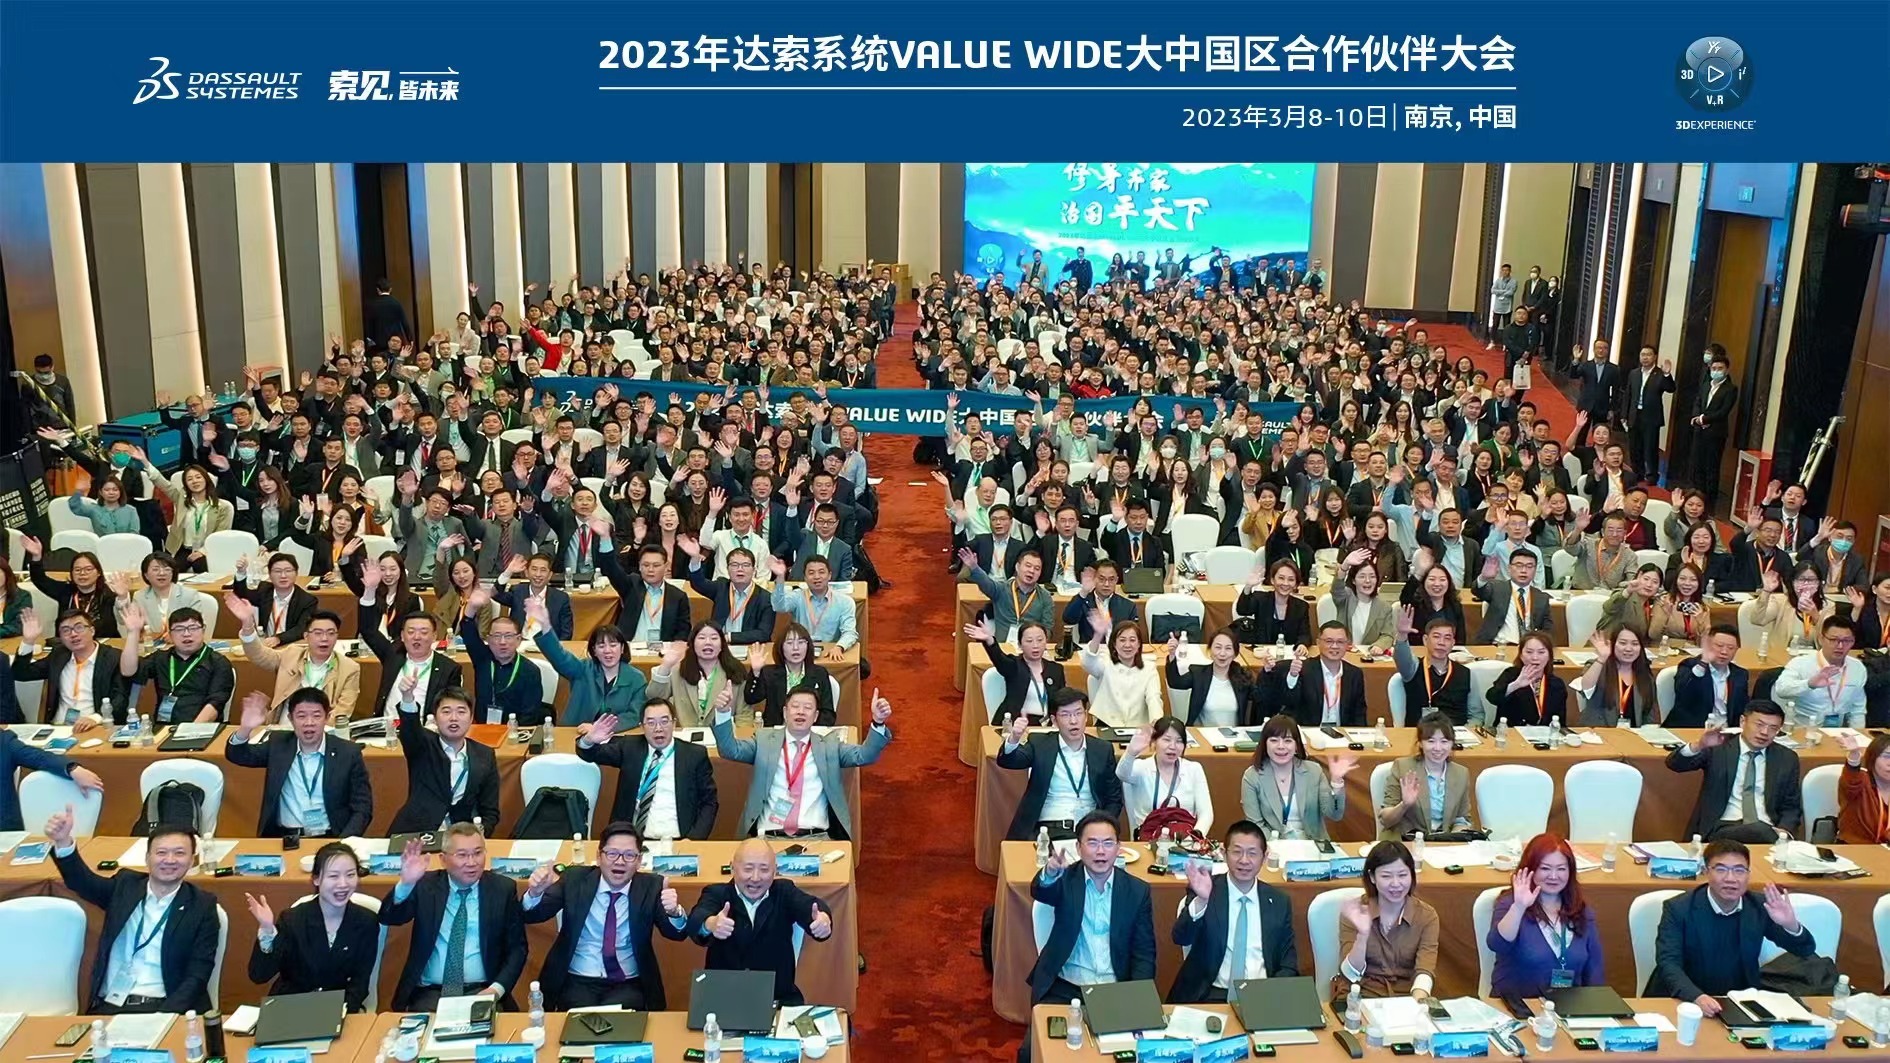 修身齐家 治国平天下 | 2023年达索系统VALUE WIDE大中国区合作伙伴大会 / 技术年会圆满举行